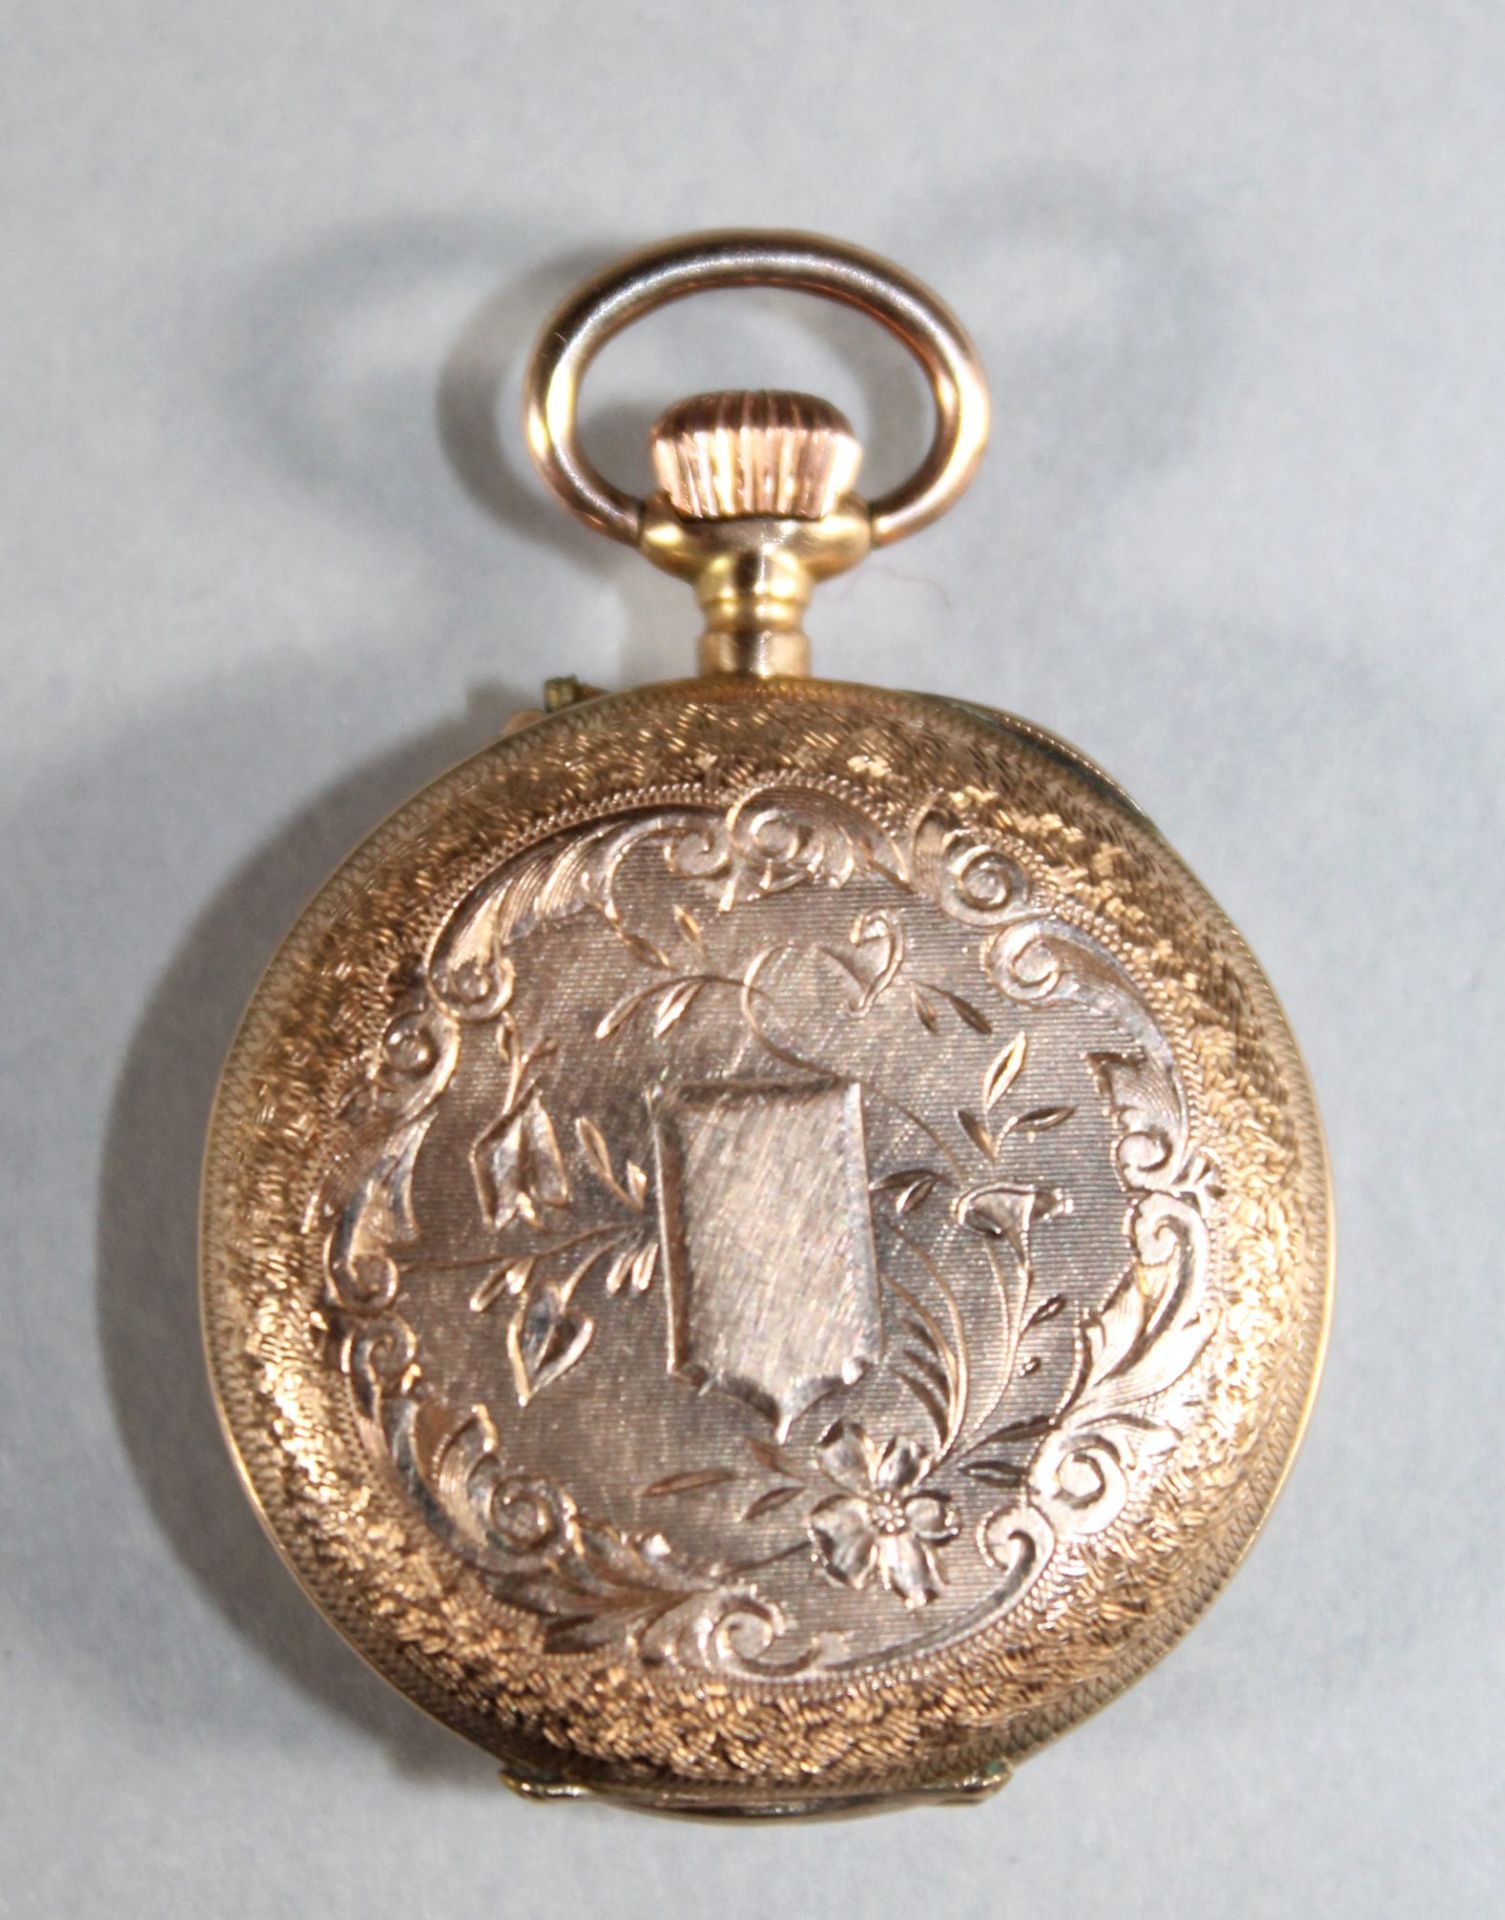 1 kleine Damen-Taschenuhr 14kt.Rg (585/000), weißes Zifferblatt mit schwarzen römischen Ziffern, - Bild 2 aus 4